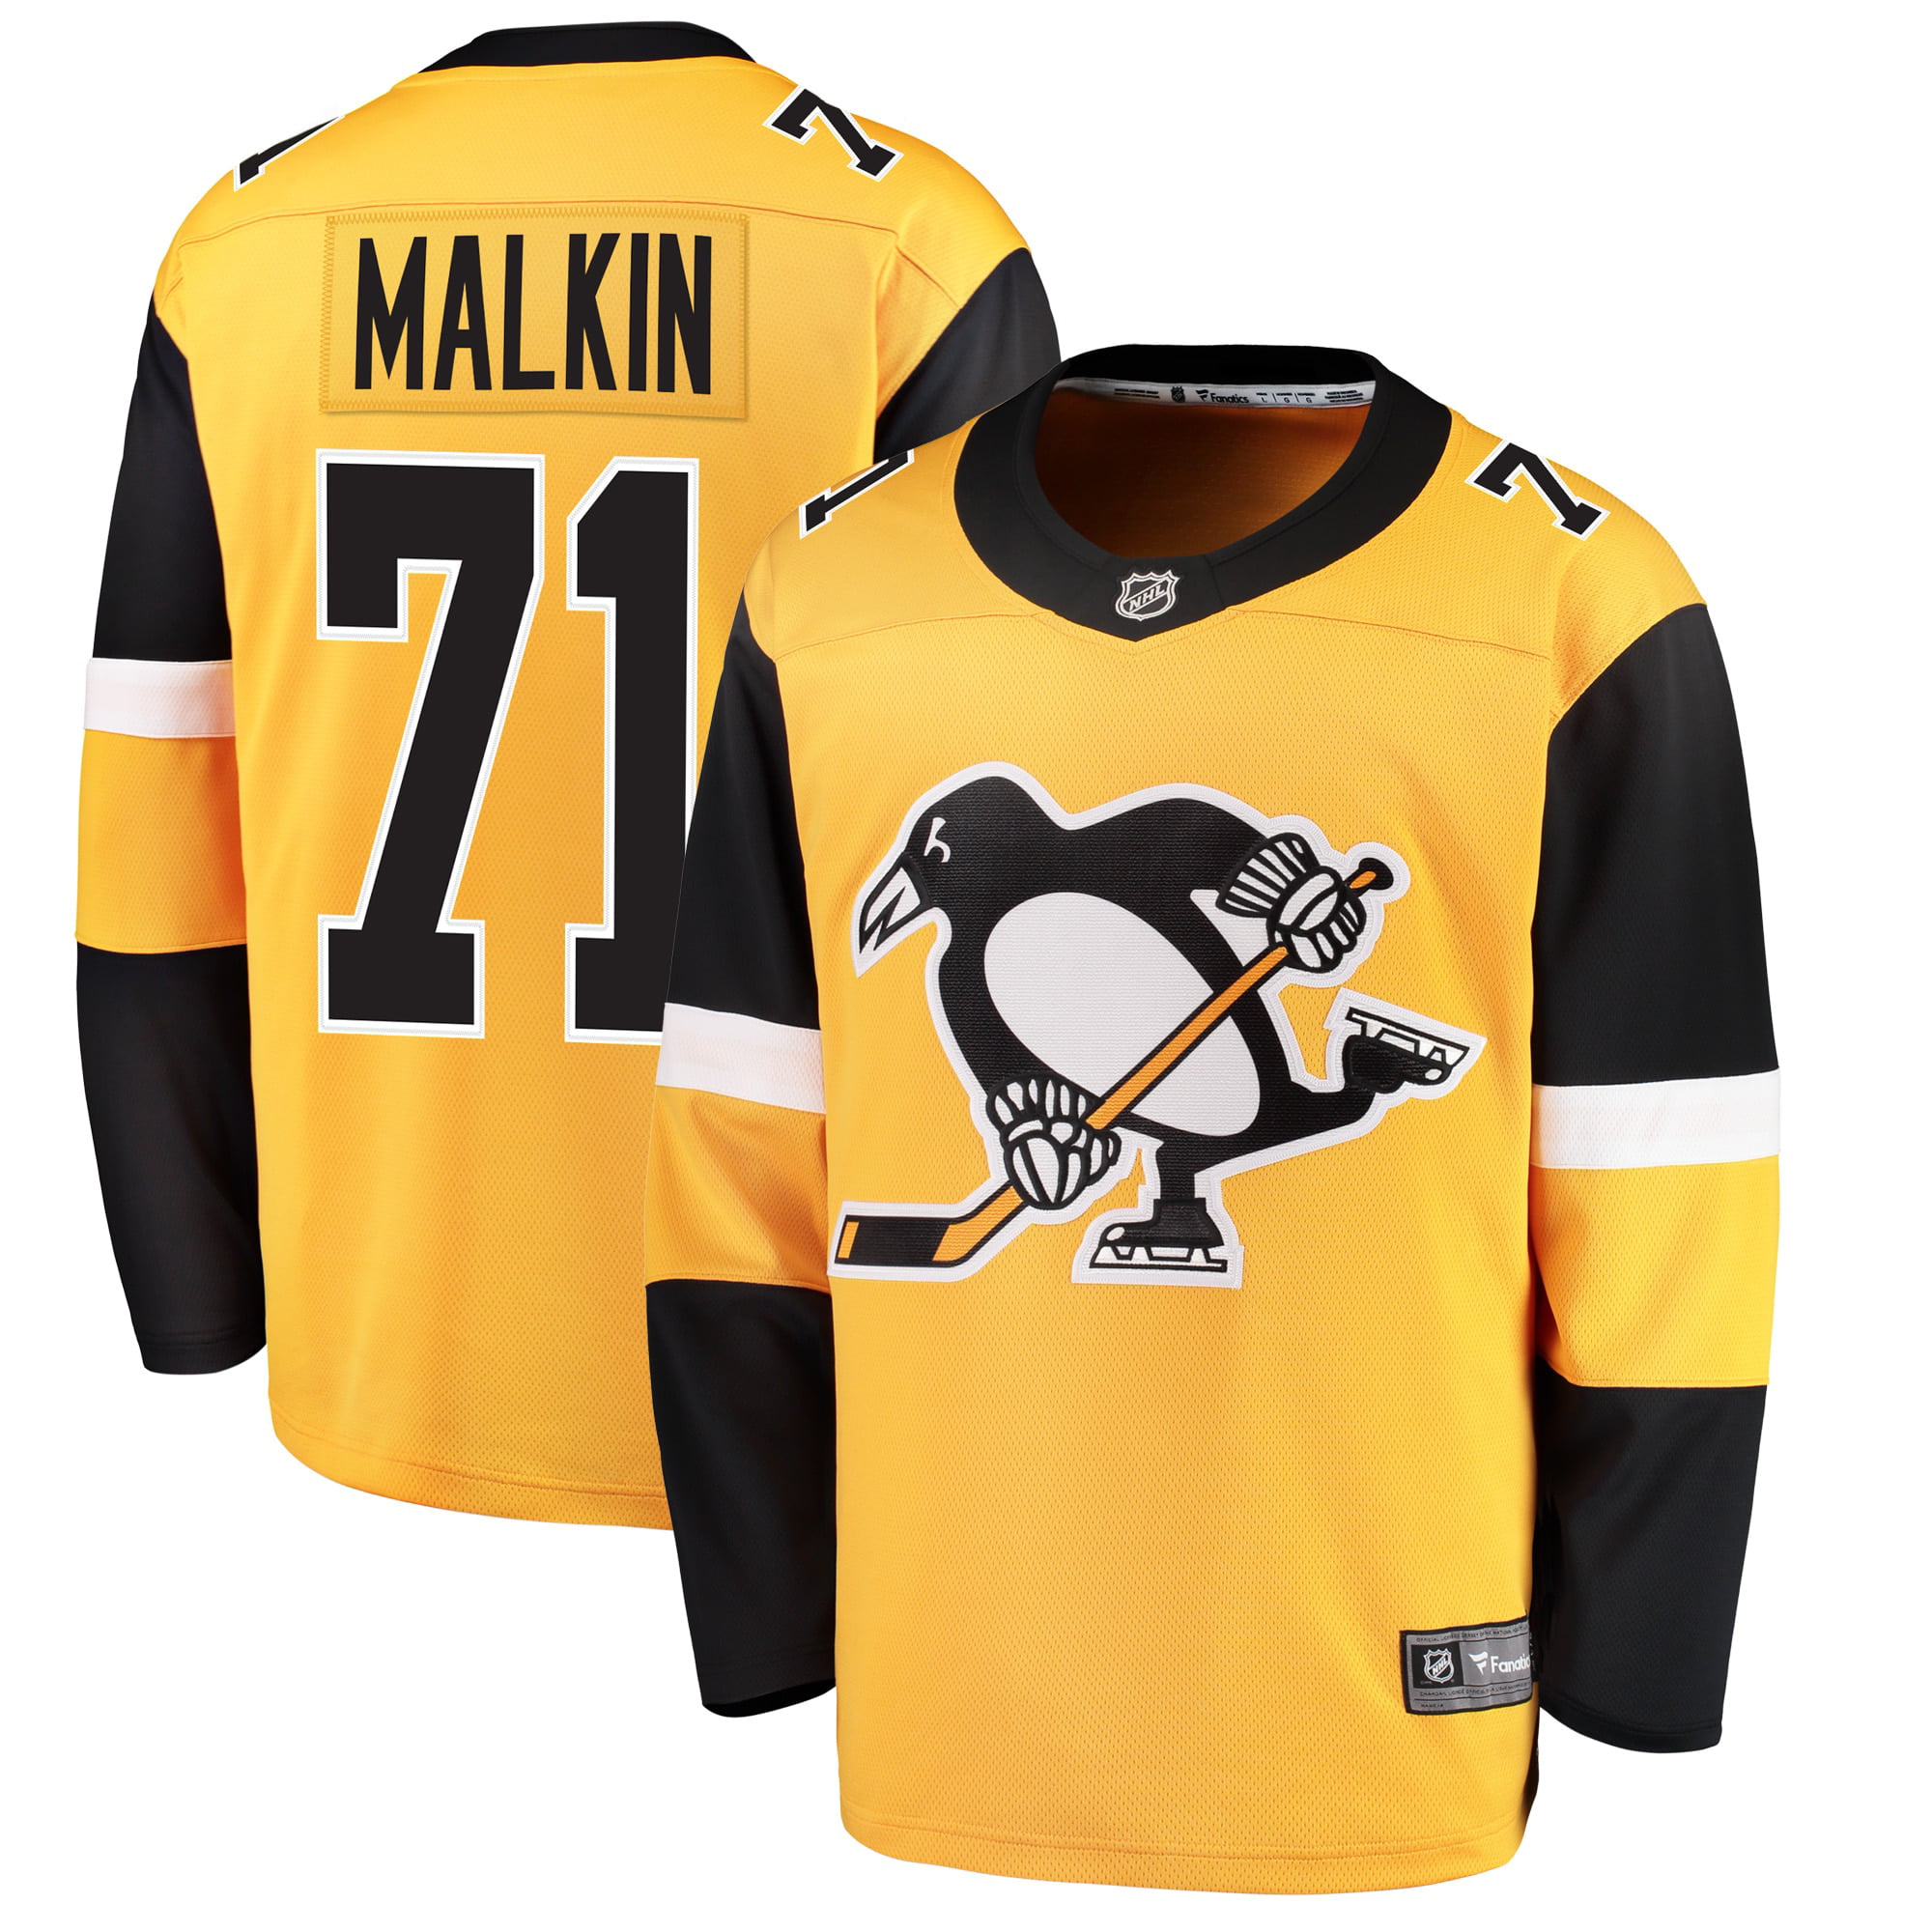 malkin penguins jersey